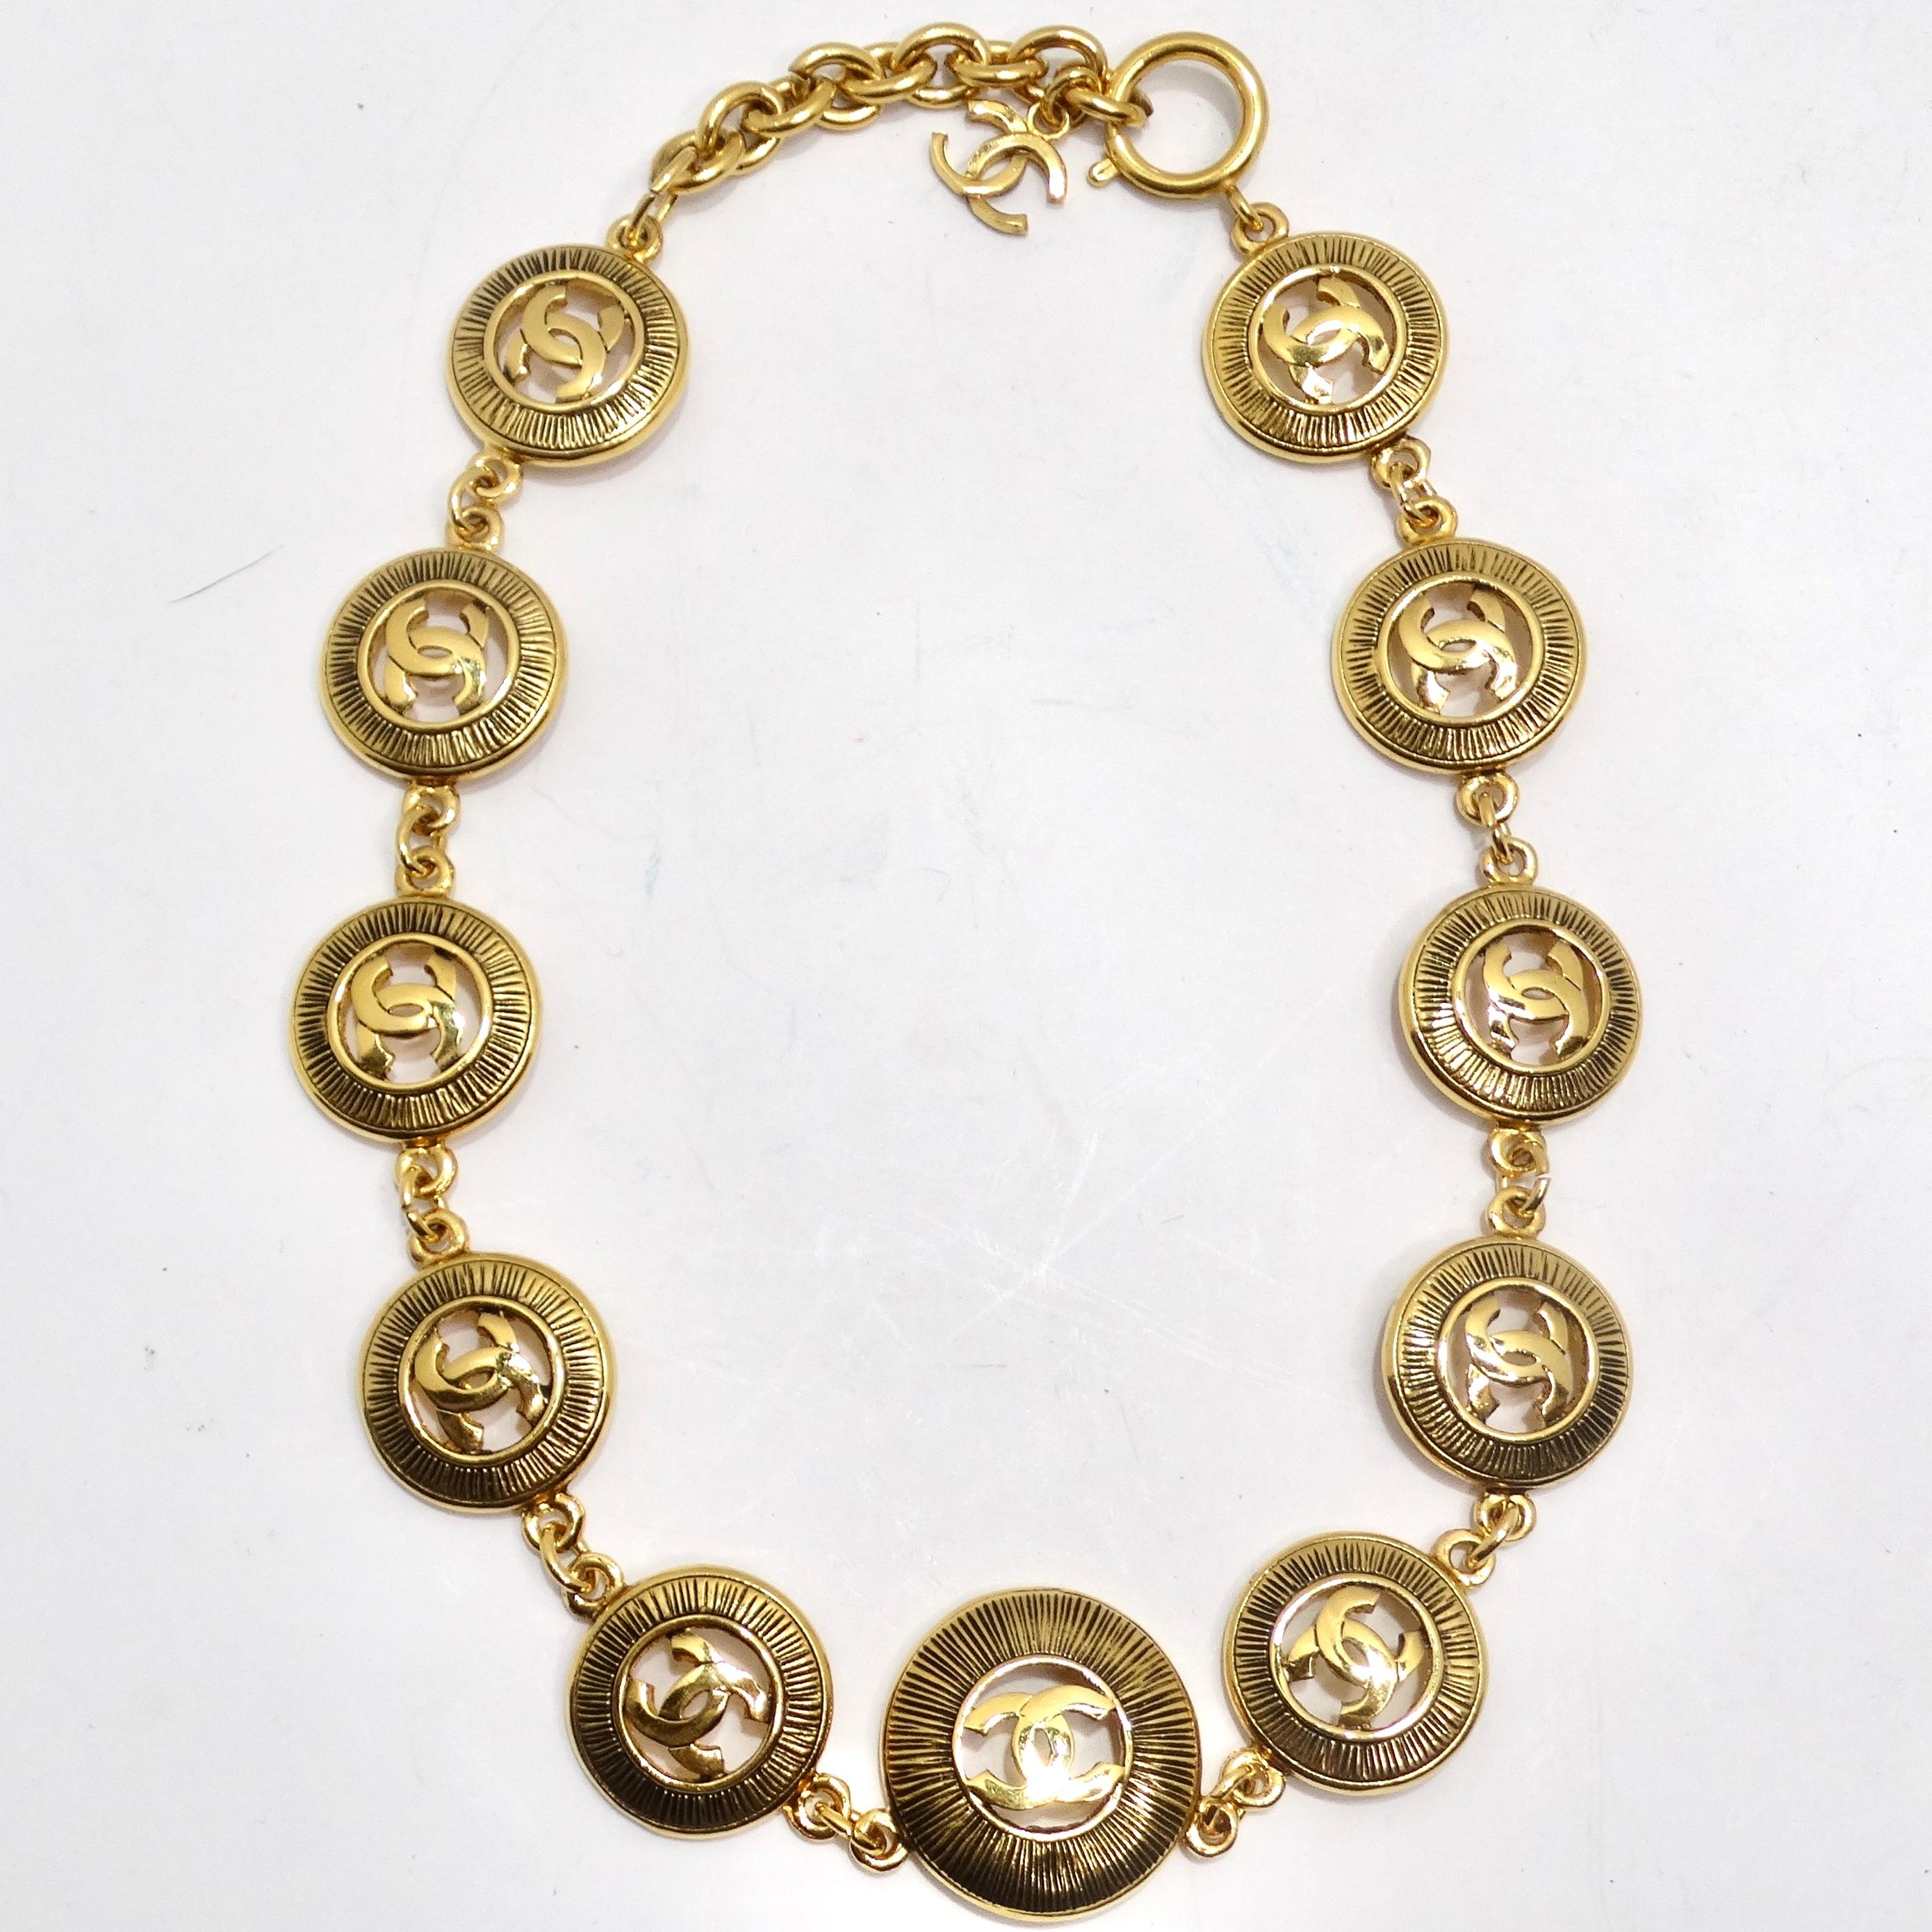 Die Chanel 1980s Logo Medallion Necklace ist ein atemberaubendes Stück Vintage-Eleganz. Diese Halskette besteht aus 11 vergoldeten Chanel-Anhängern mit CC-Logo und Sonnenschliff-Muster. Die ikonischen, ineinandergreifenden 